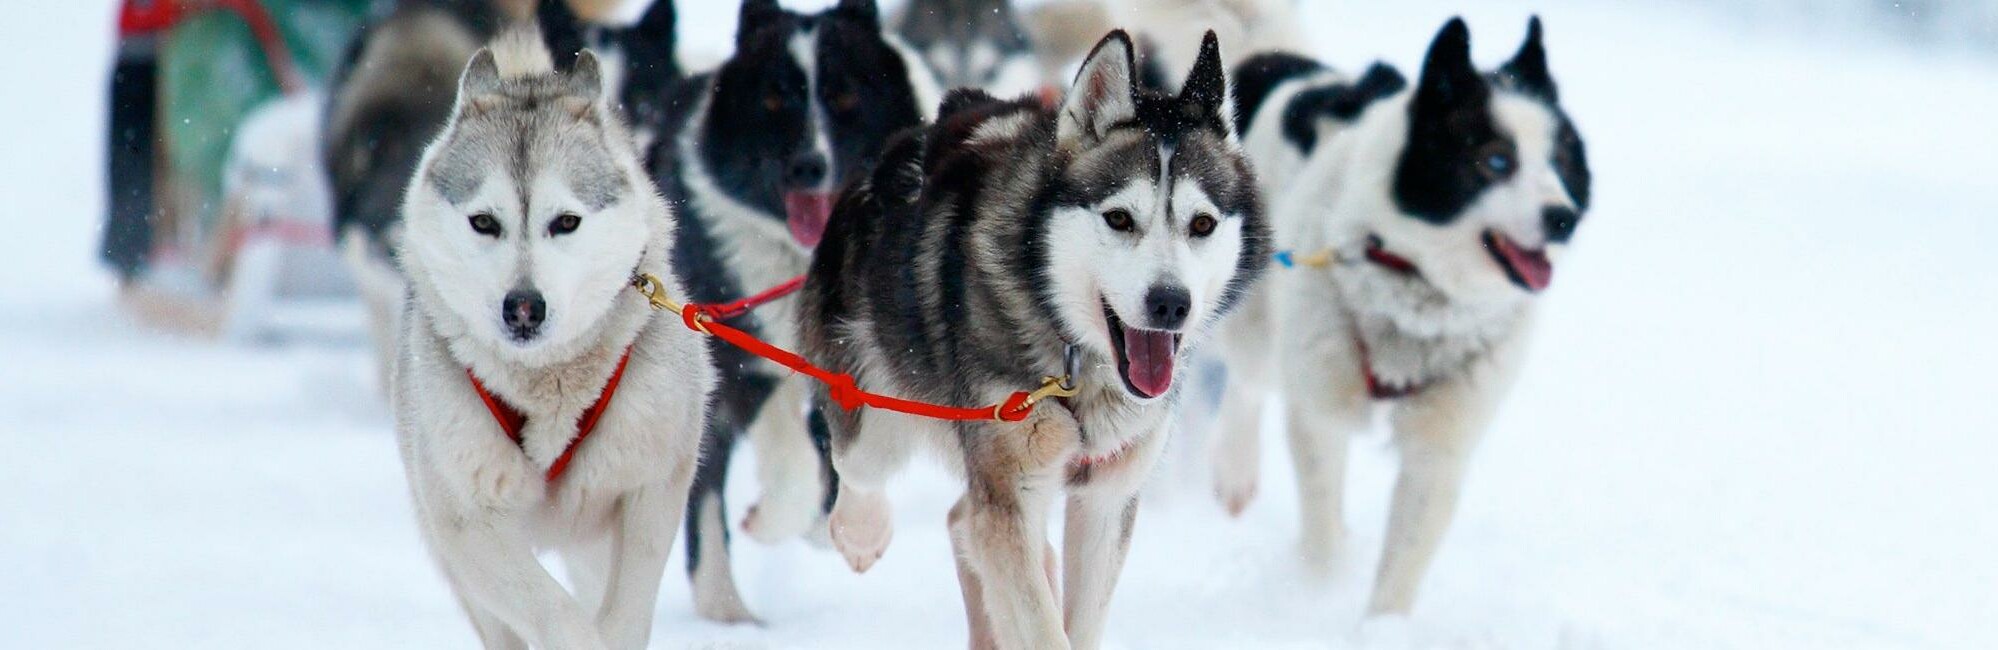 Включи лайки малыши. Катание на хасках. Красивые собаки. Аляскинские ездовые маламуты. Зима Байкал фото.